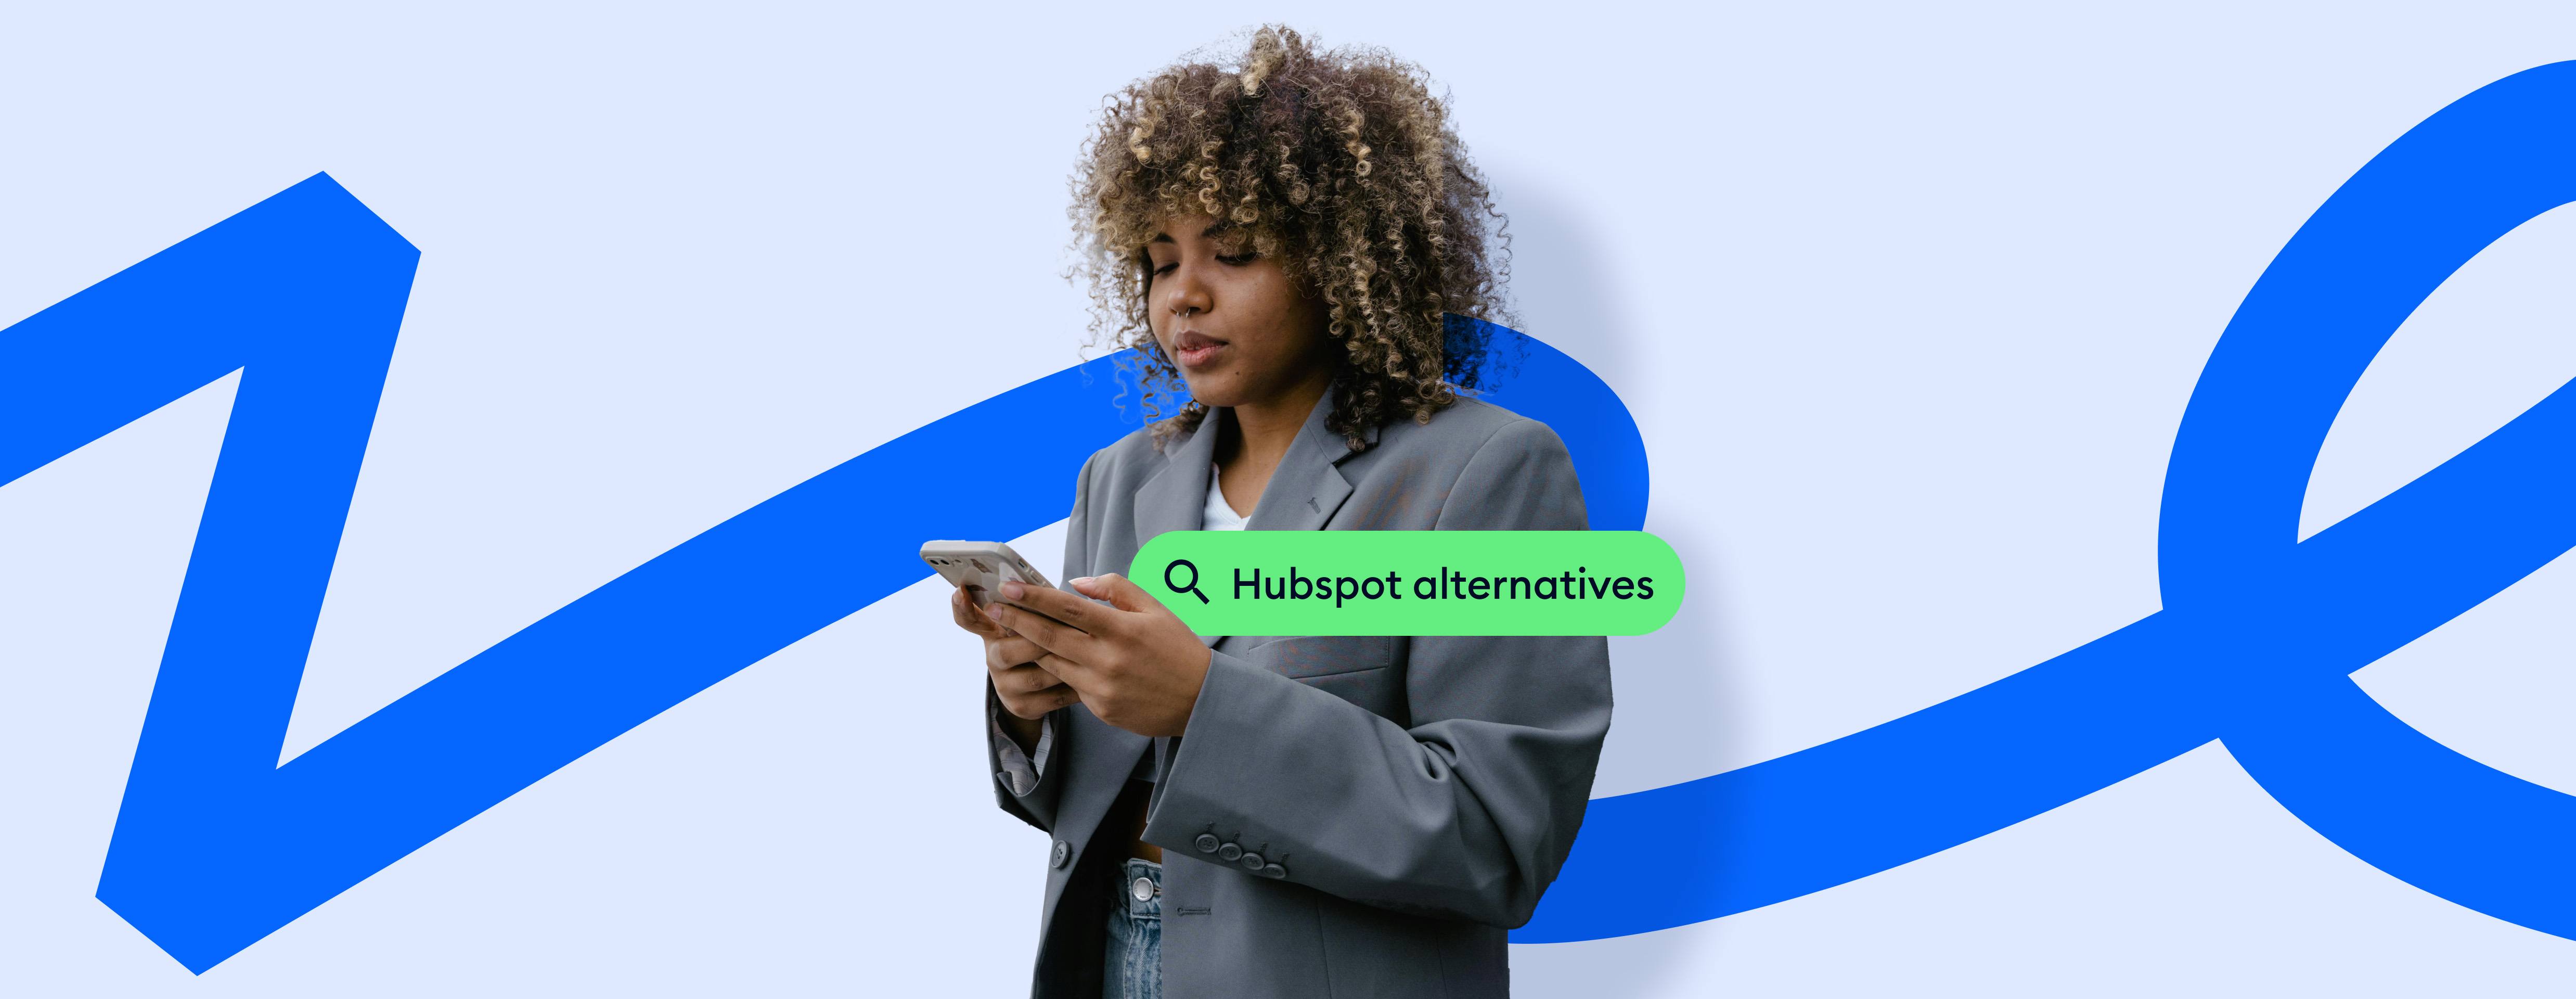 hubspot alternatives cover image